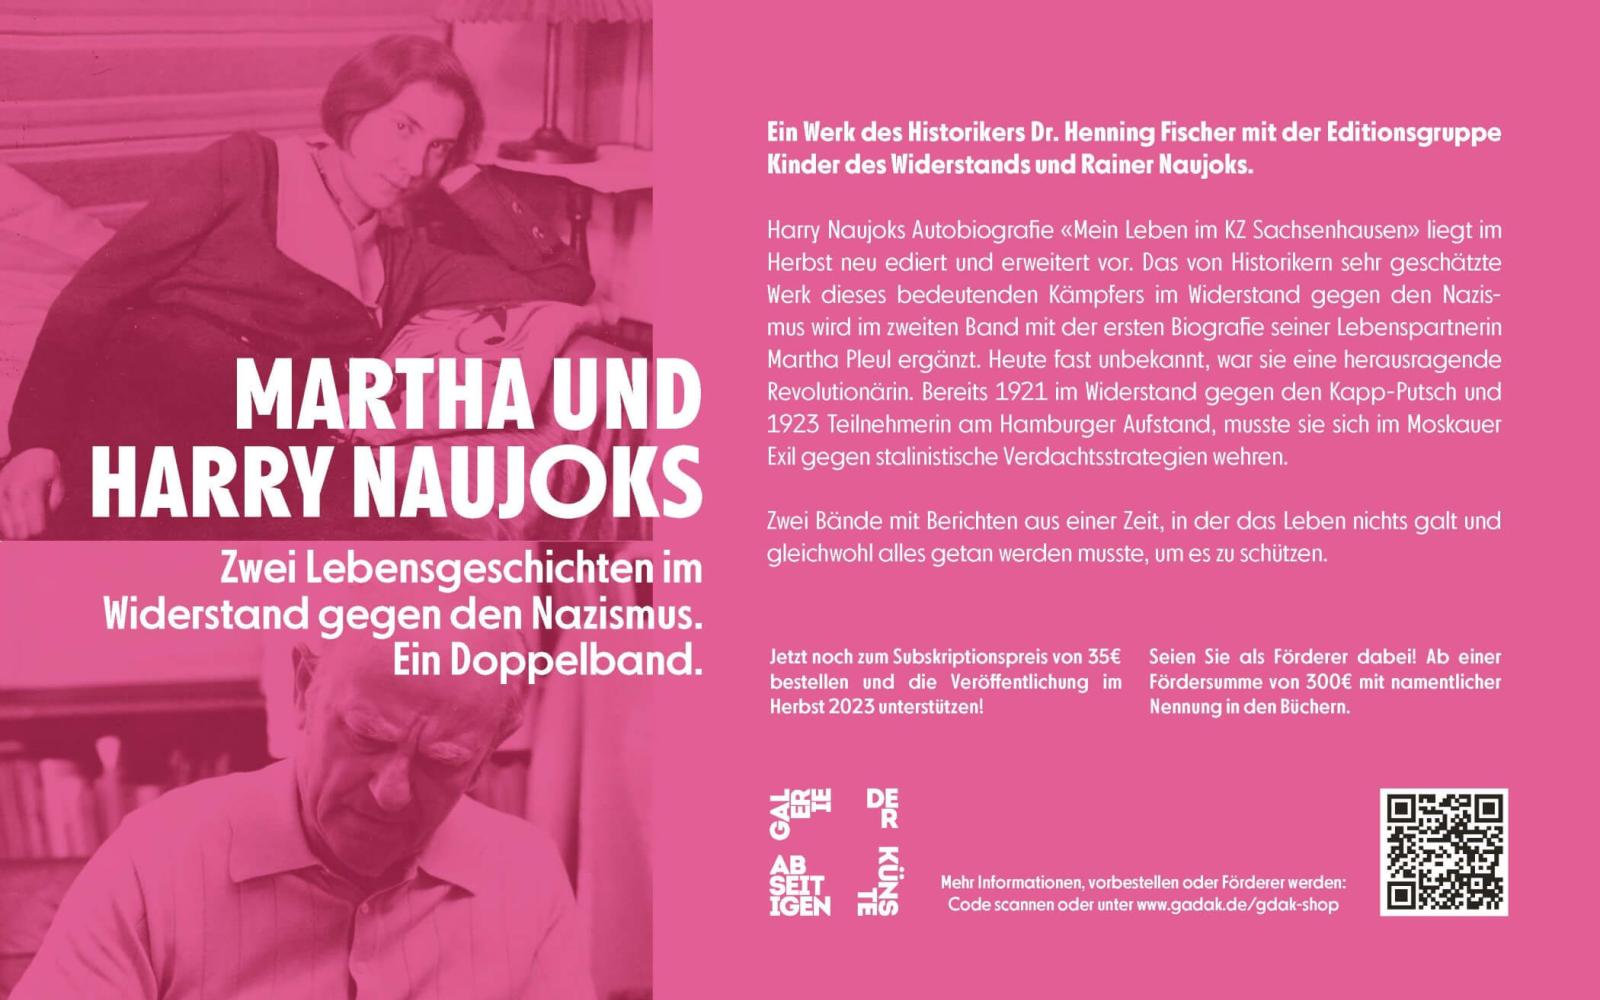 Harry und Martha Naujoks. Jetzt zum Subskriptionspreis von 35 € bestellen und unterstützen!